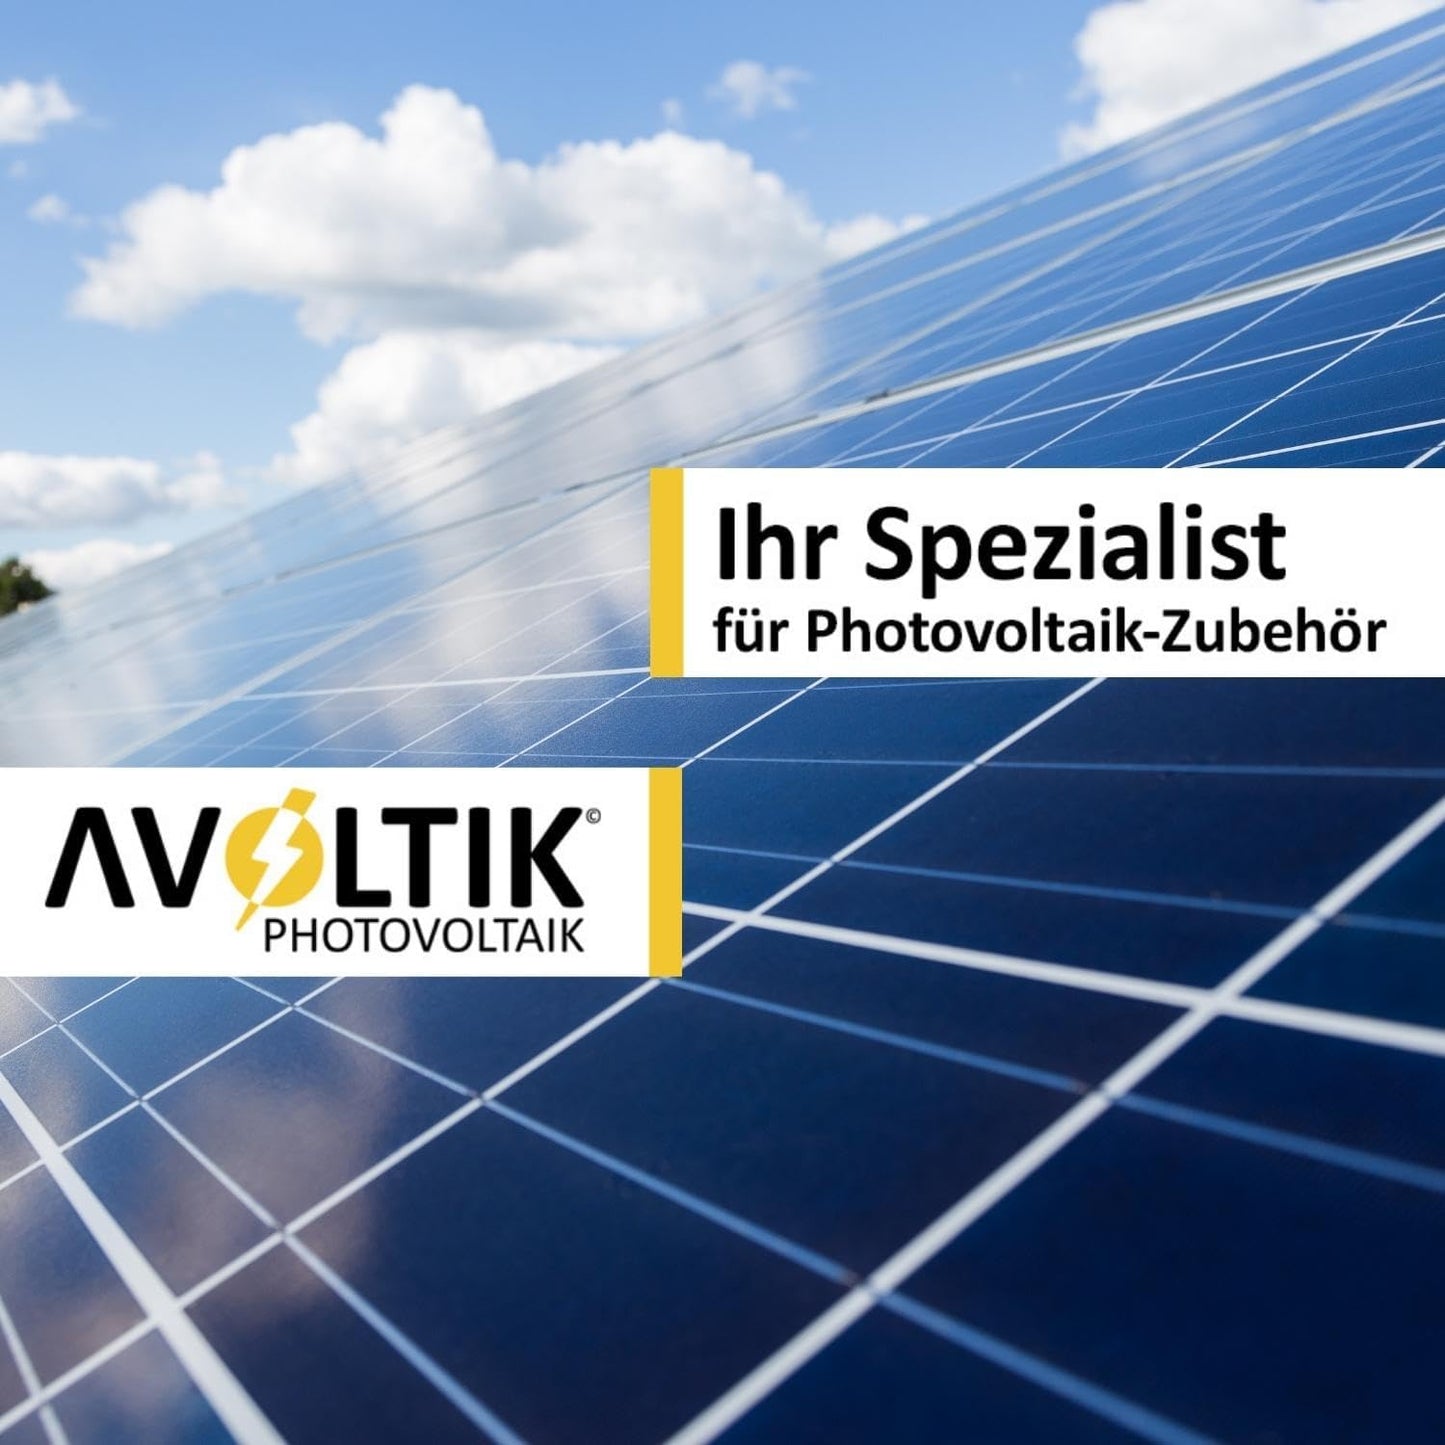 AVOLTIK Photovoltaik - Ihr Spezialist für Photovoltaik-Zubehör